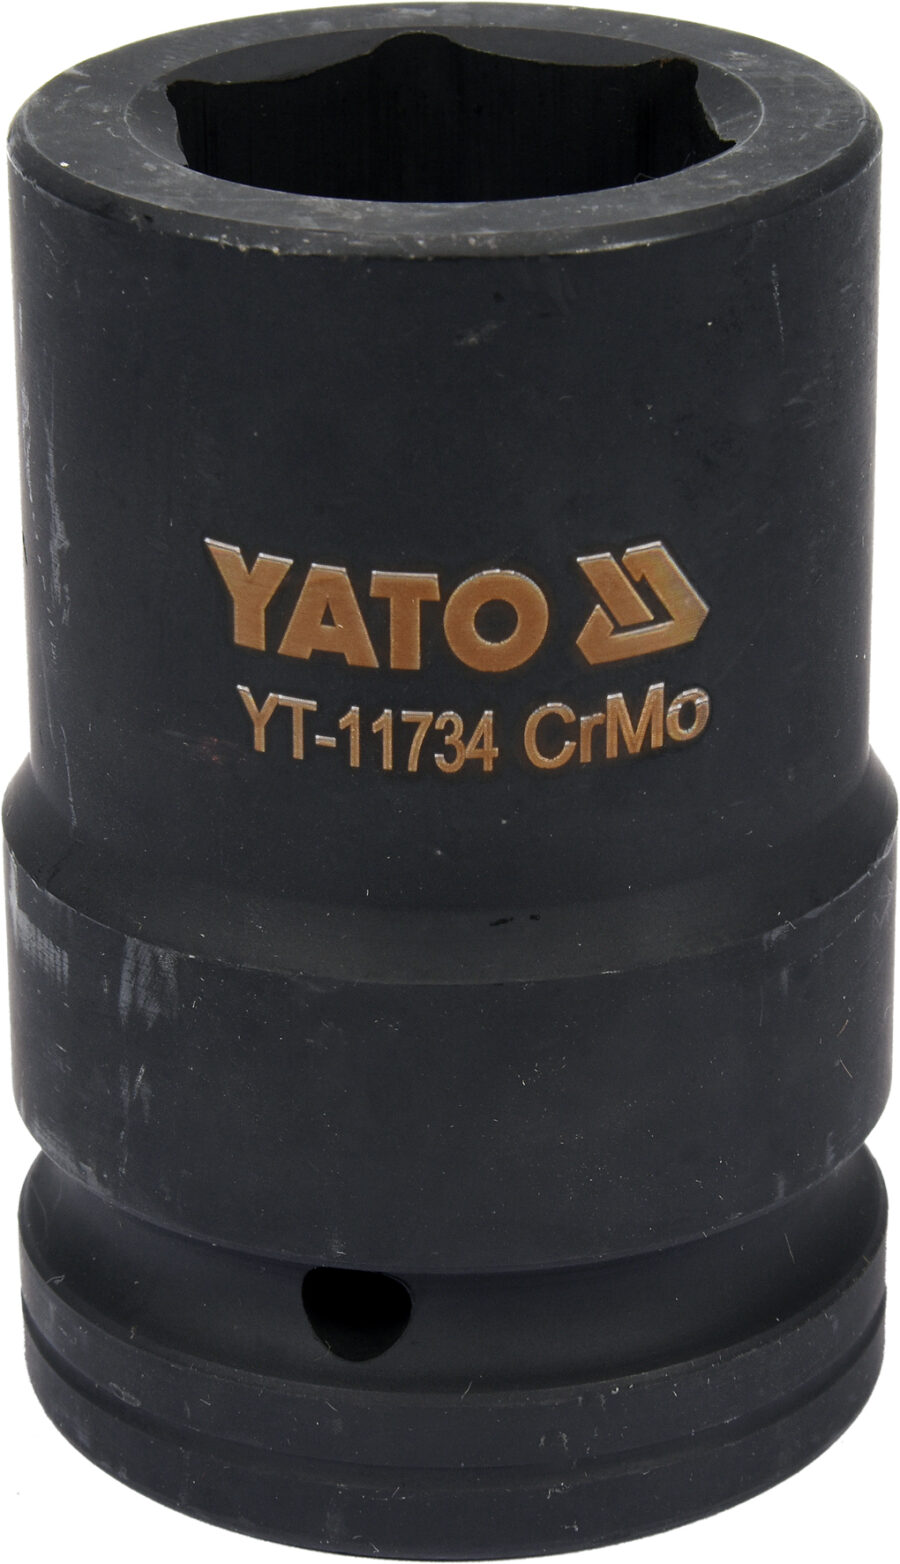 IMPACT Muciņa garā 1" 30mm (YT-11734) - YT-11734 salidzini kurpirkt cenas